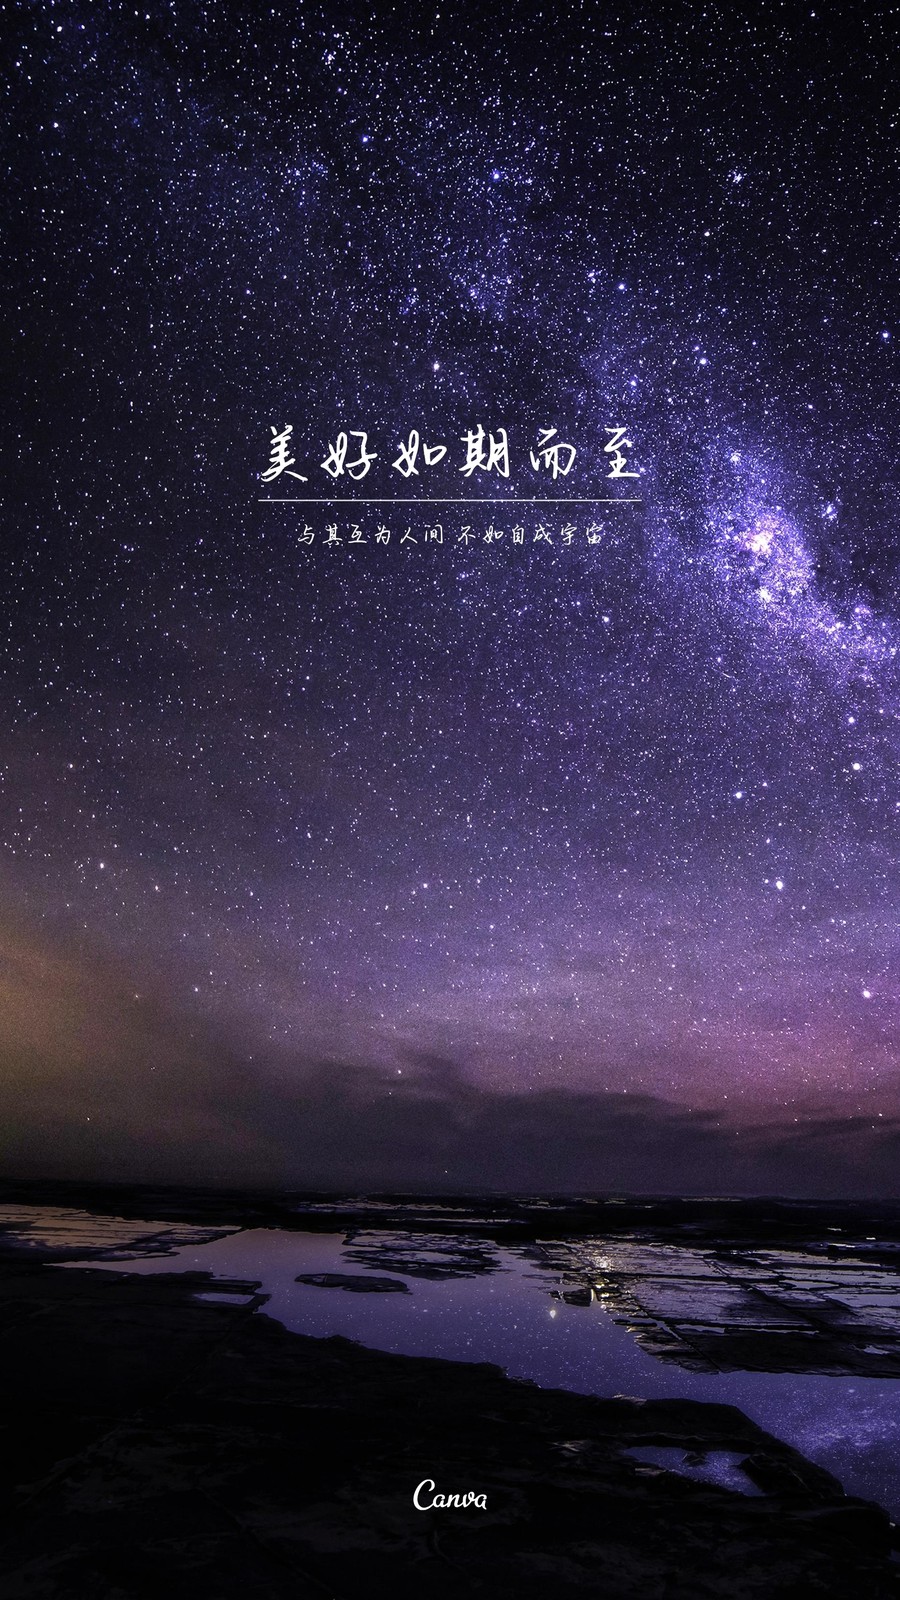 蓝紫色星空星星宇宙nasa火星月亮繁星照片热点分享中文手机壁纸 模板 Canva可画